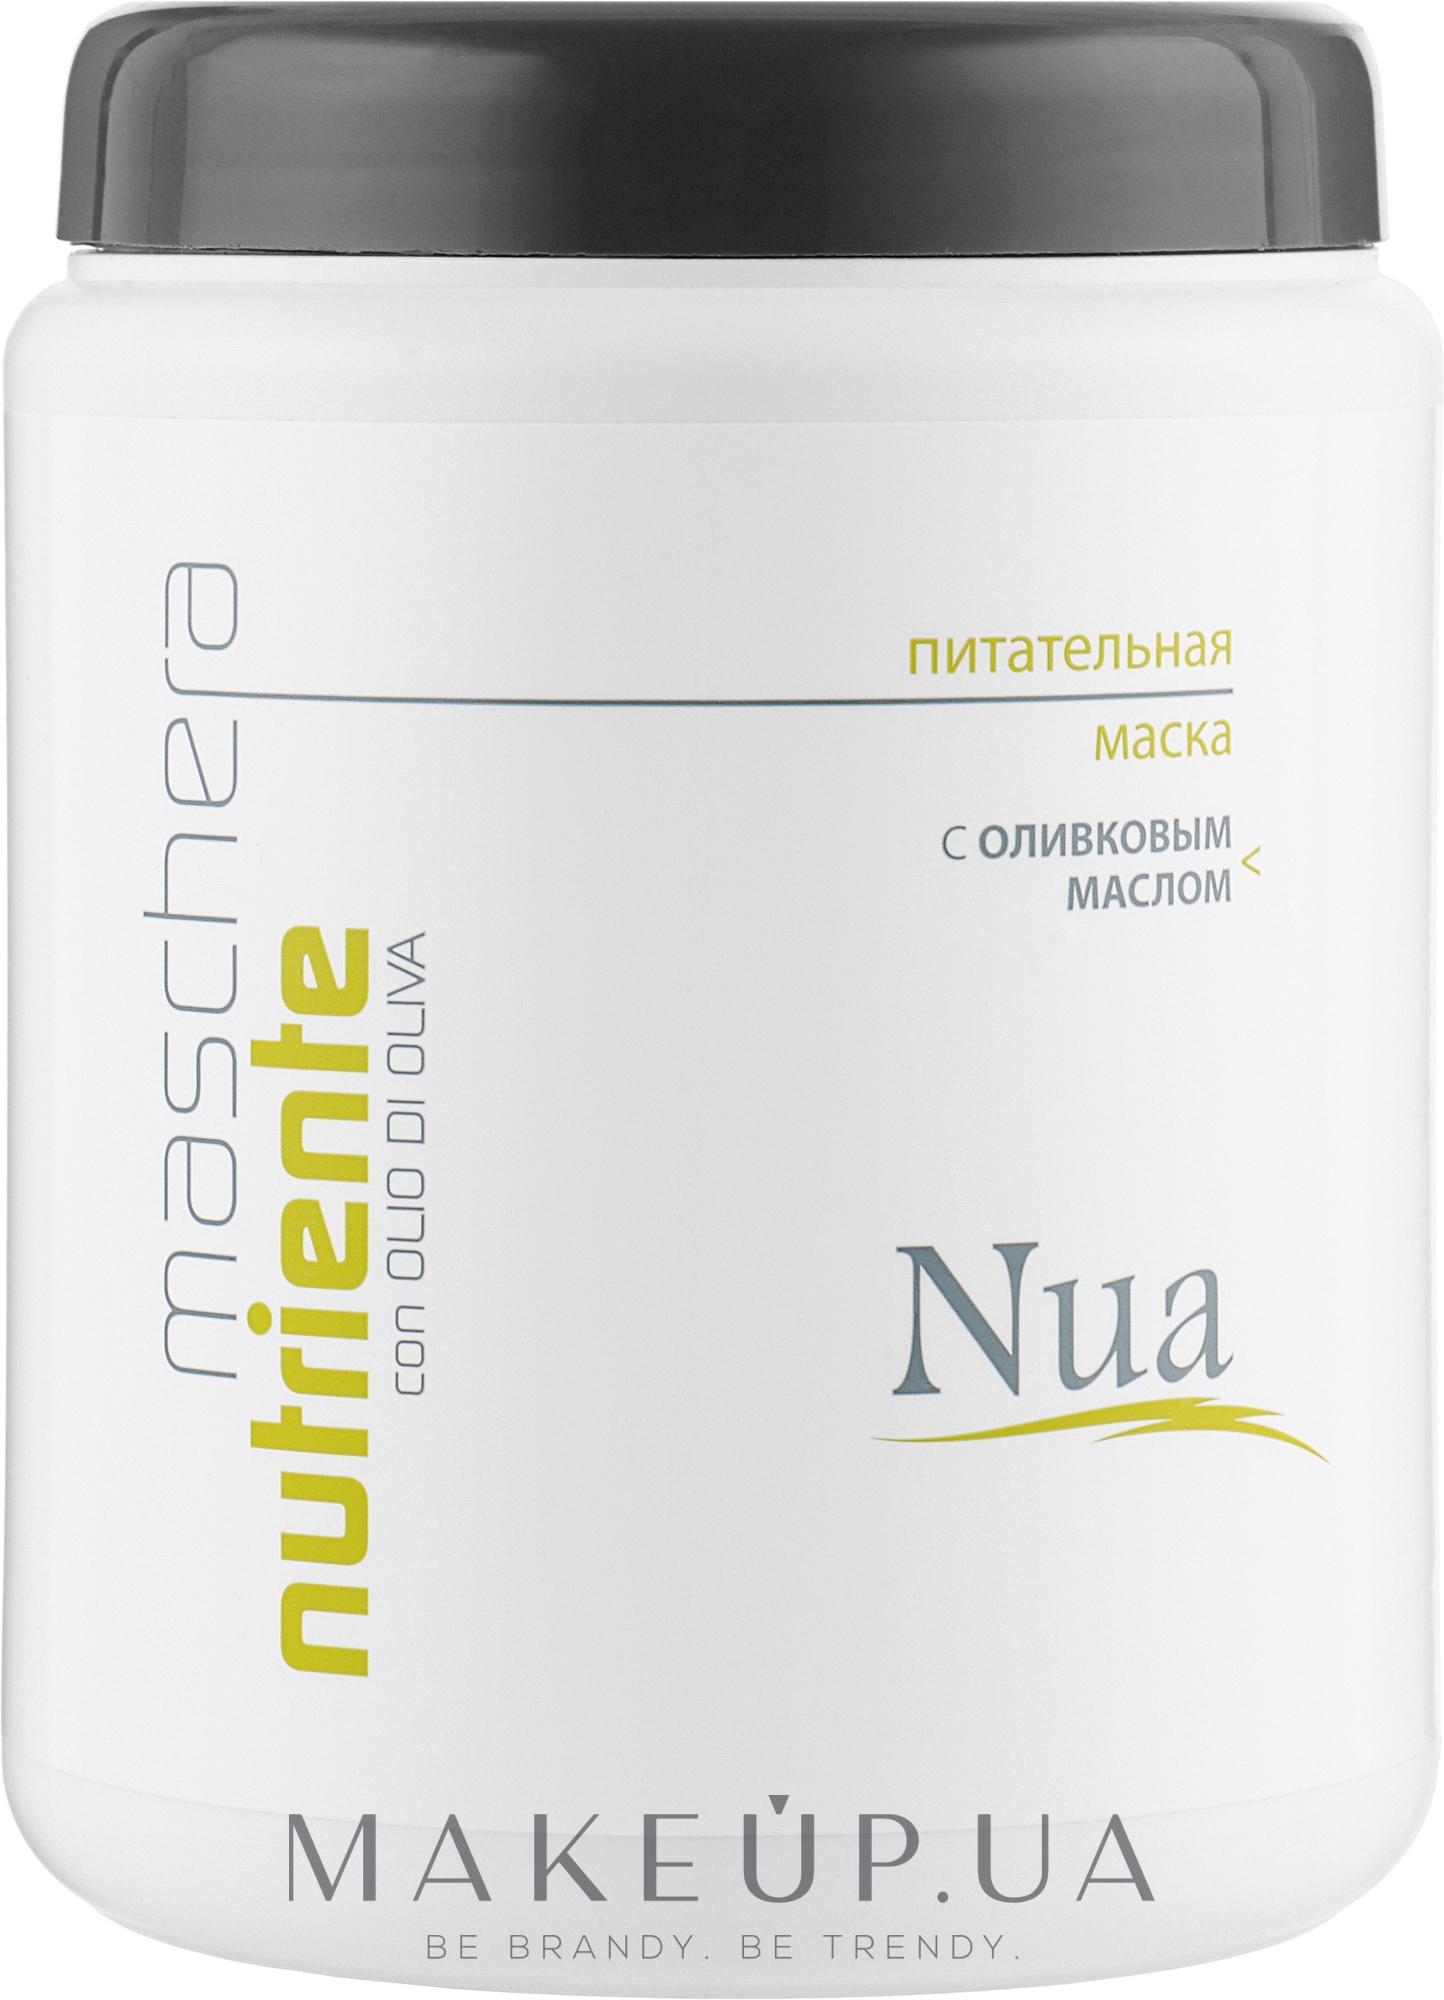 Питательная маска с оливковым маслом - Nua Maschera Nurtiente — фото 1000ml